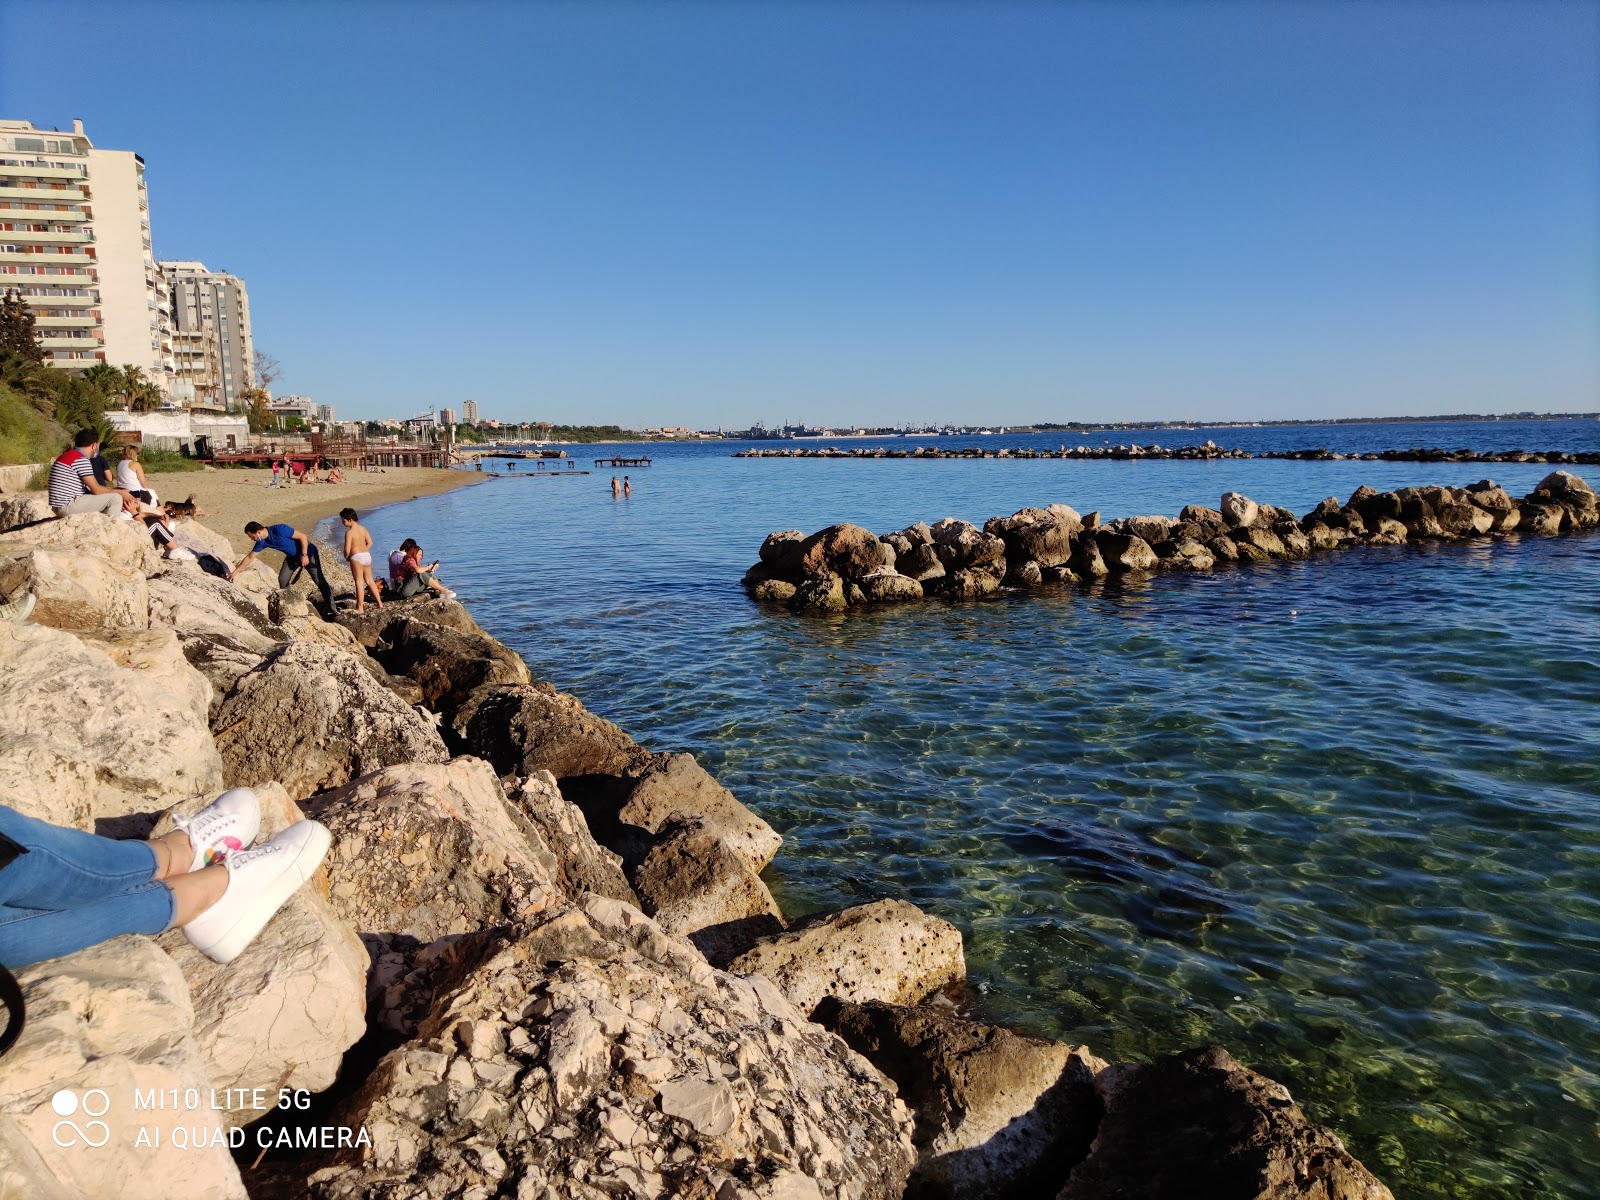 Lido Taranto'in fotoğrafı doğrudan plaj ile birlikte